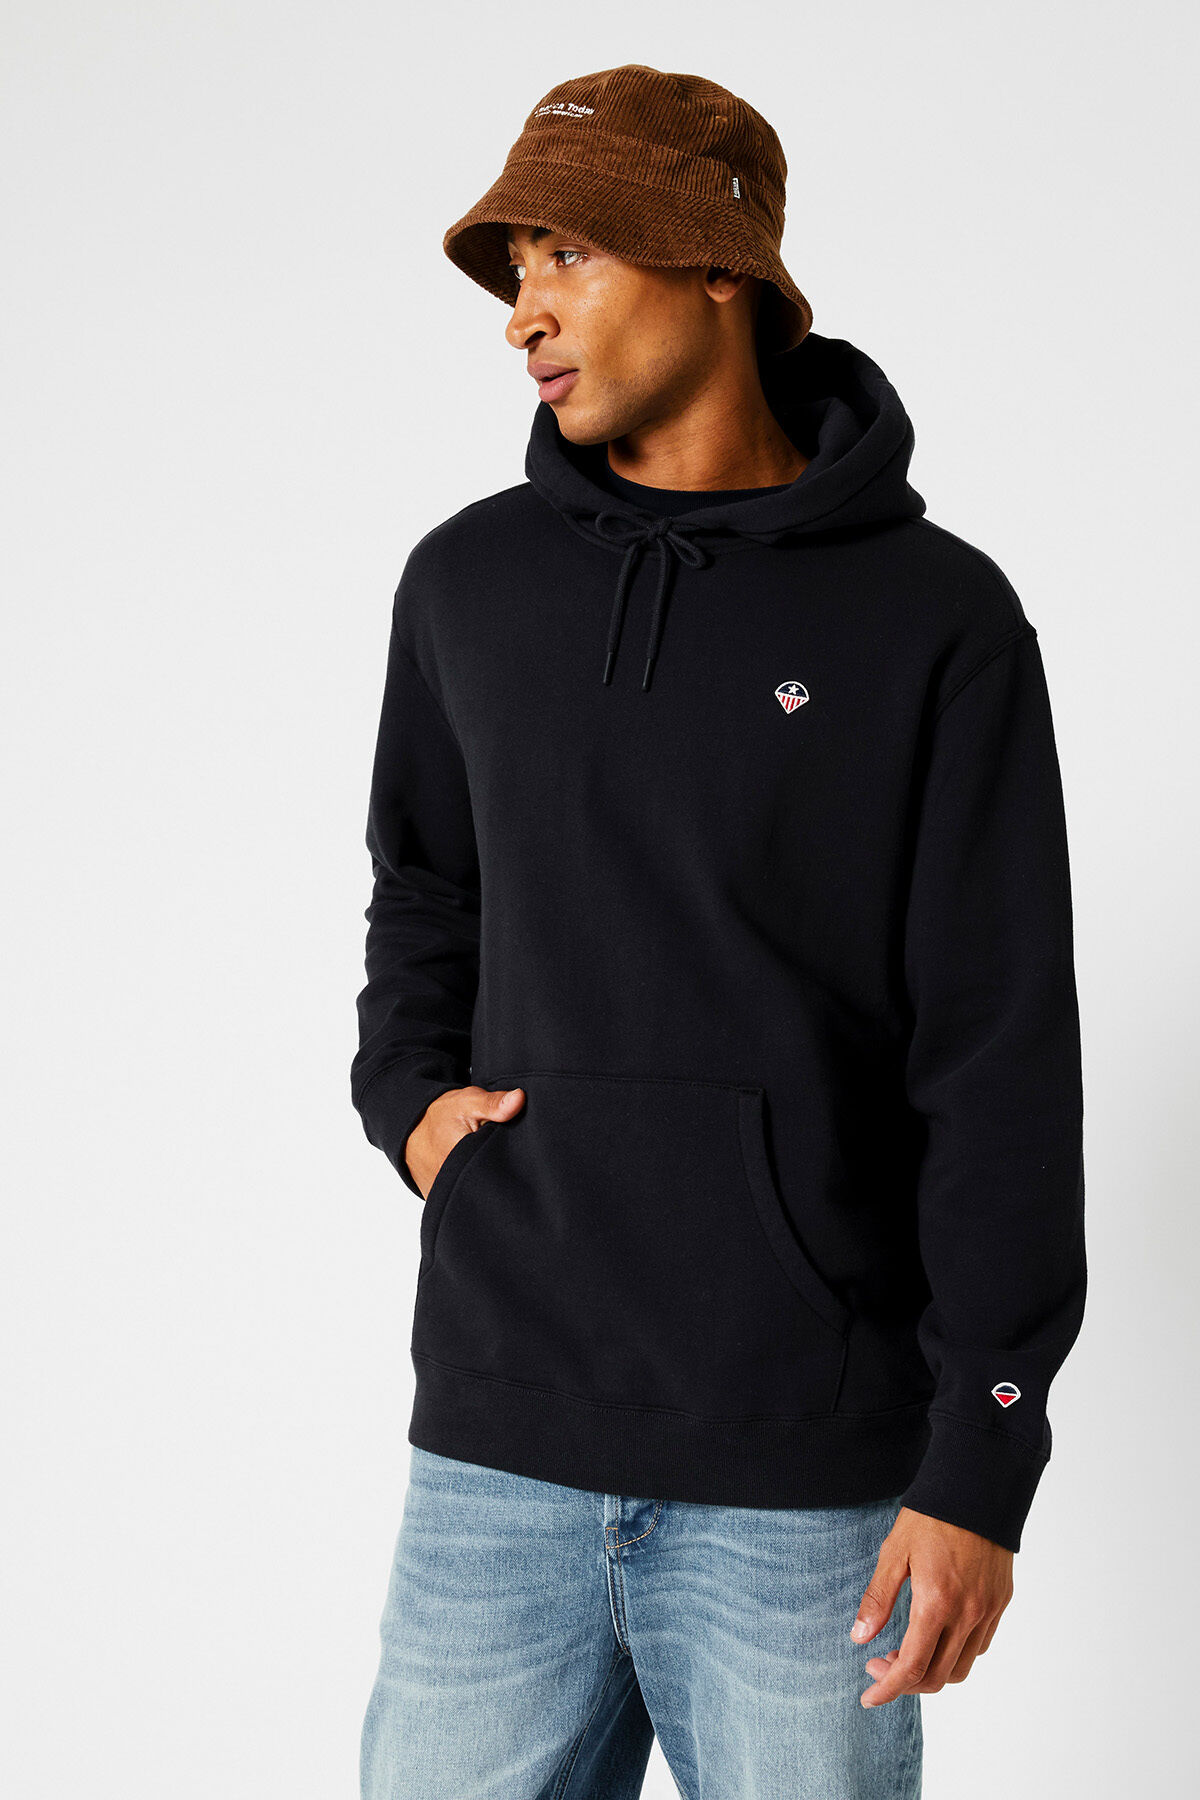 Rabatt 54 % Rot XL HERREN Pullovers & Sweatshirts Hoodie Zara sweatshirt 